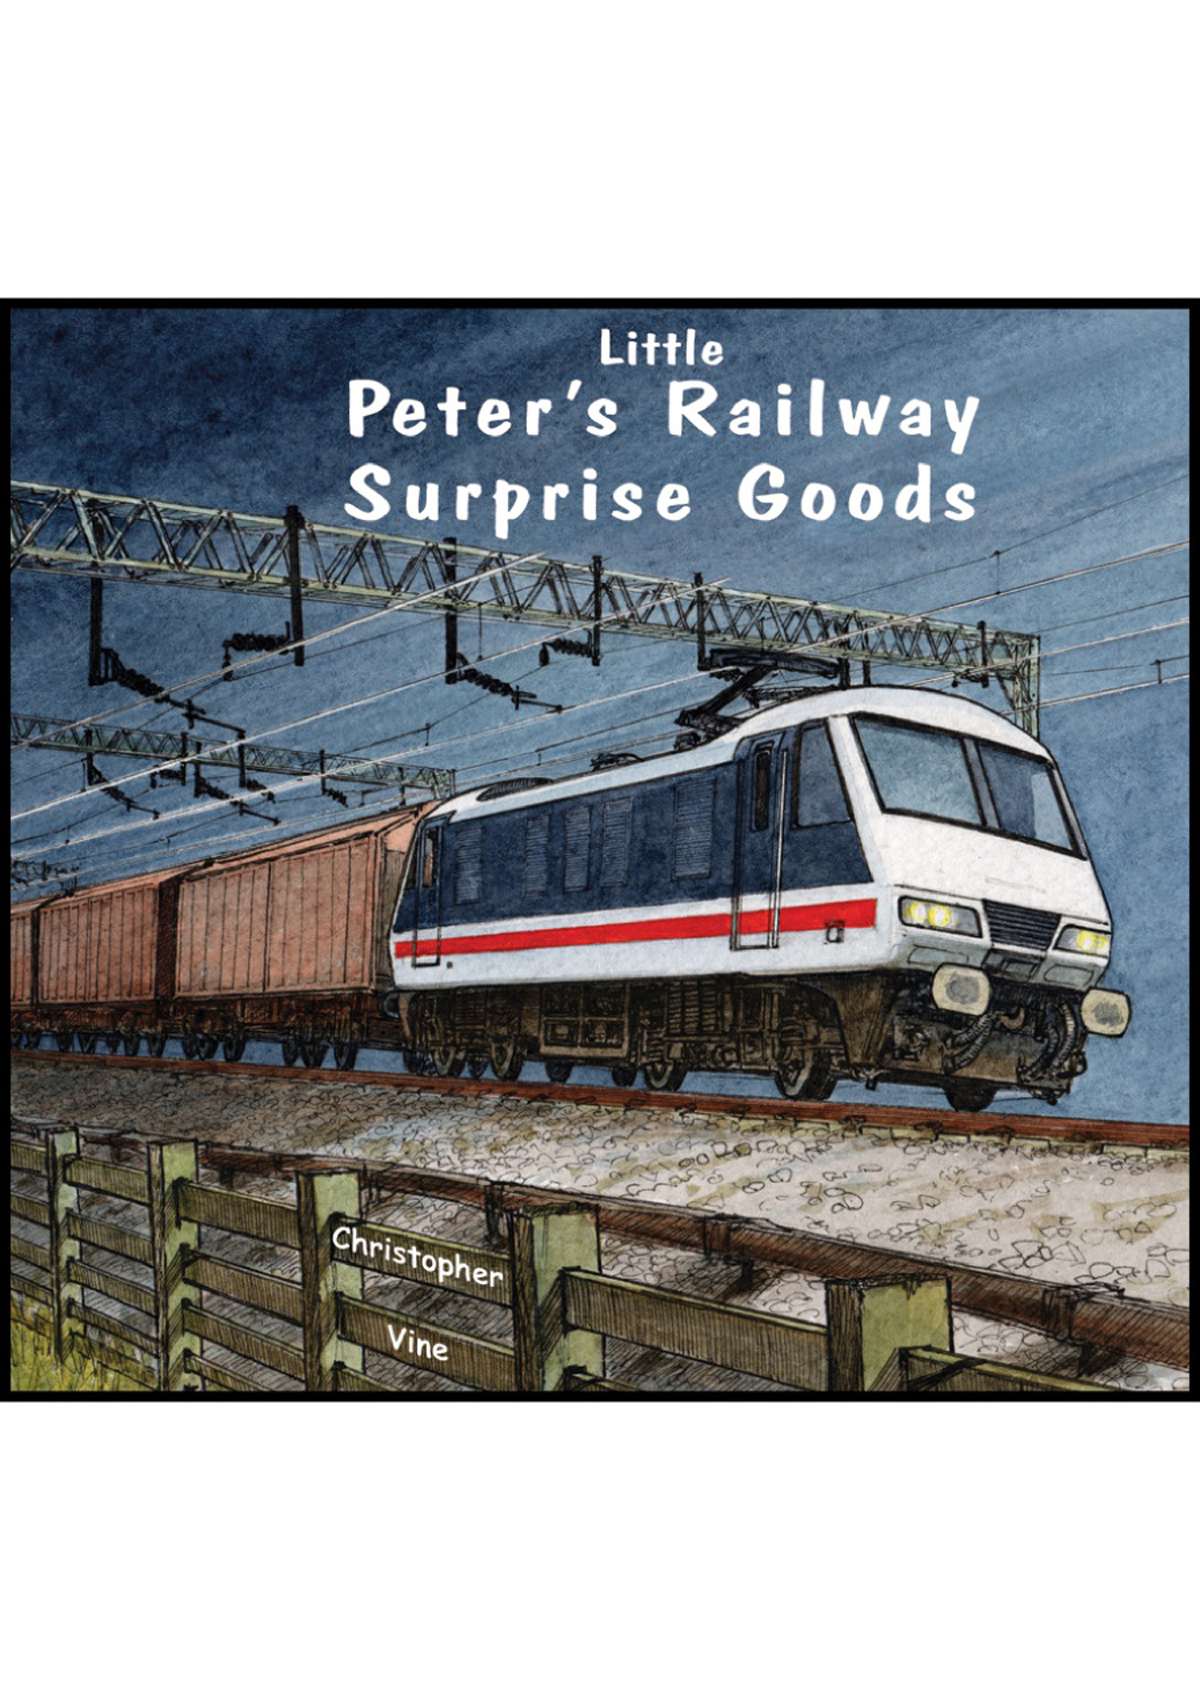 Book - Little Peter's Railway - Surprise Goods
